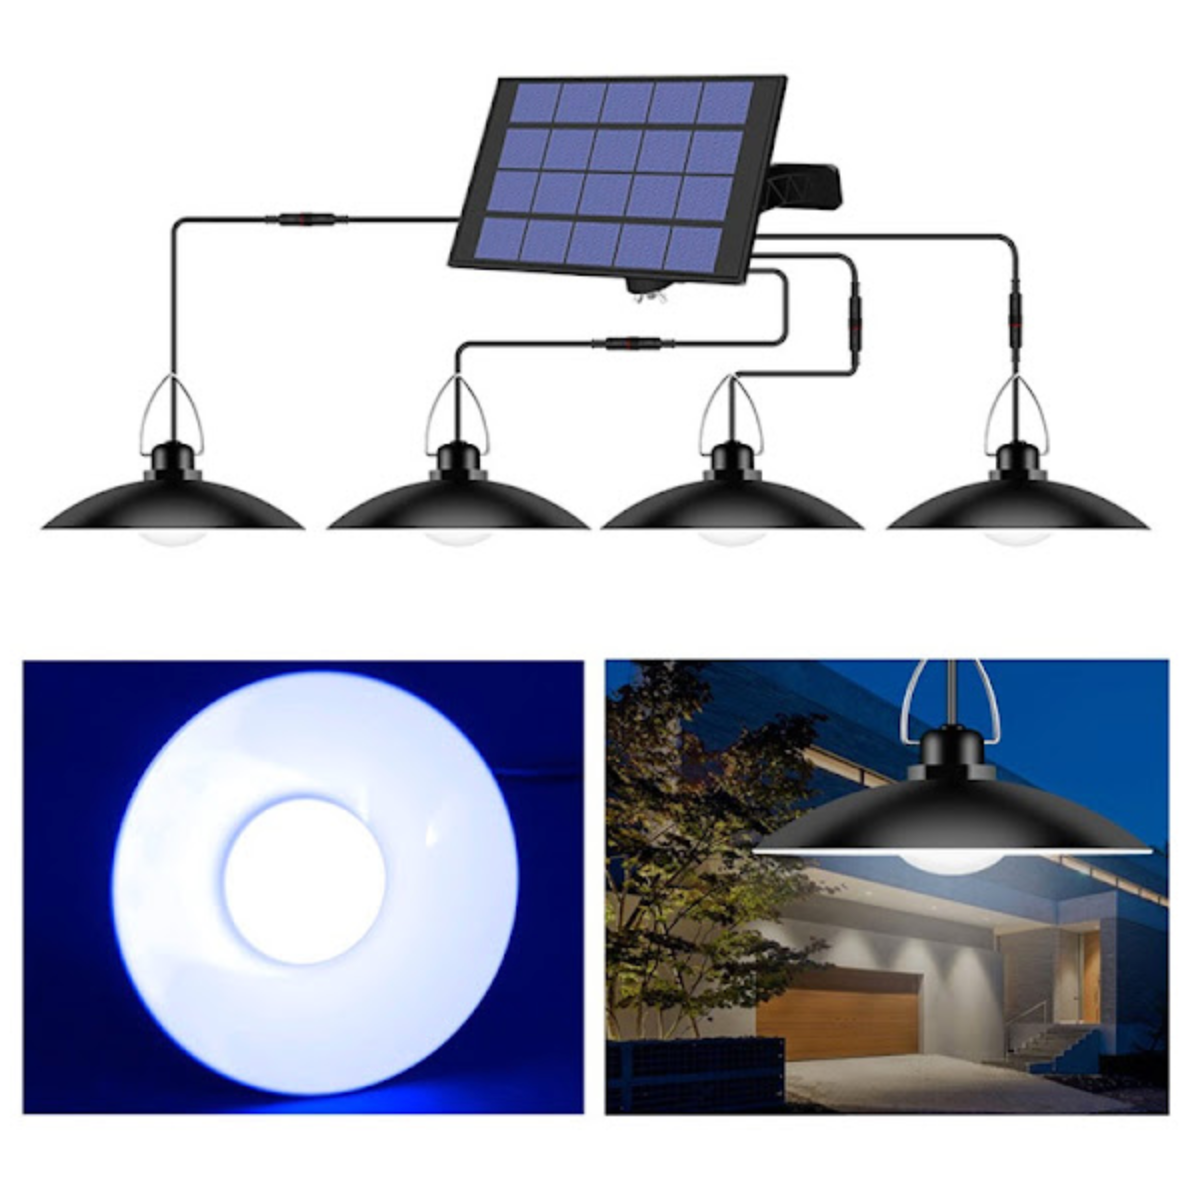 NOU : Lampa solara suspendata cu 4 becuri LED cu aplica, telecomanda, 50W